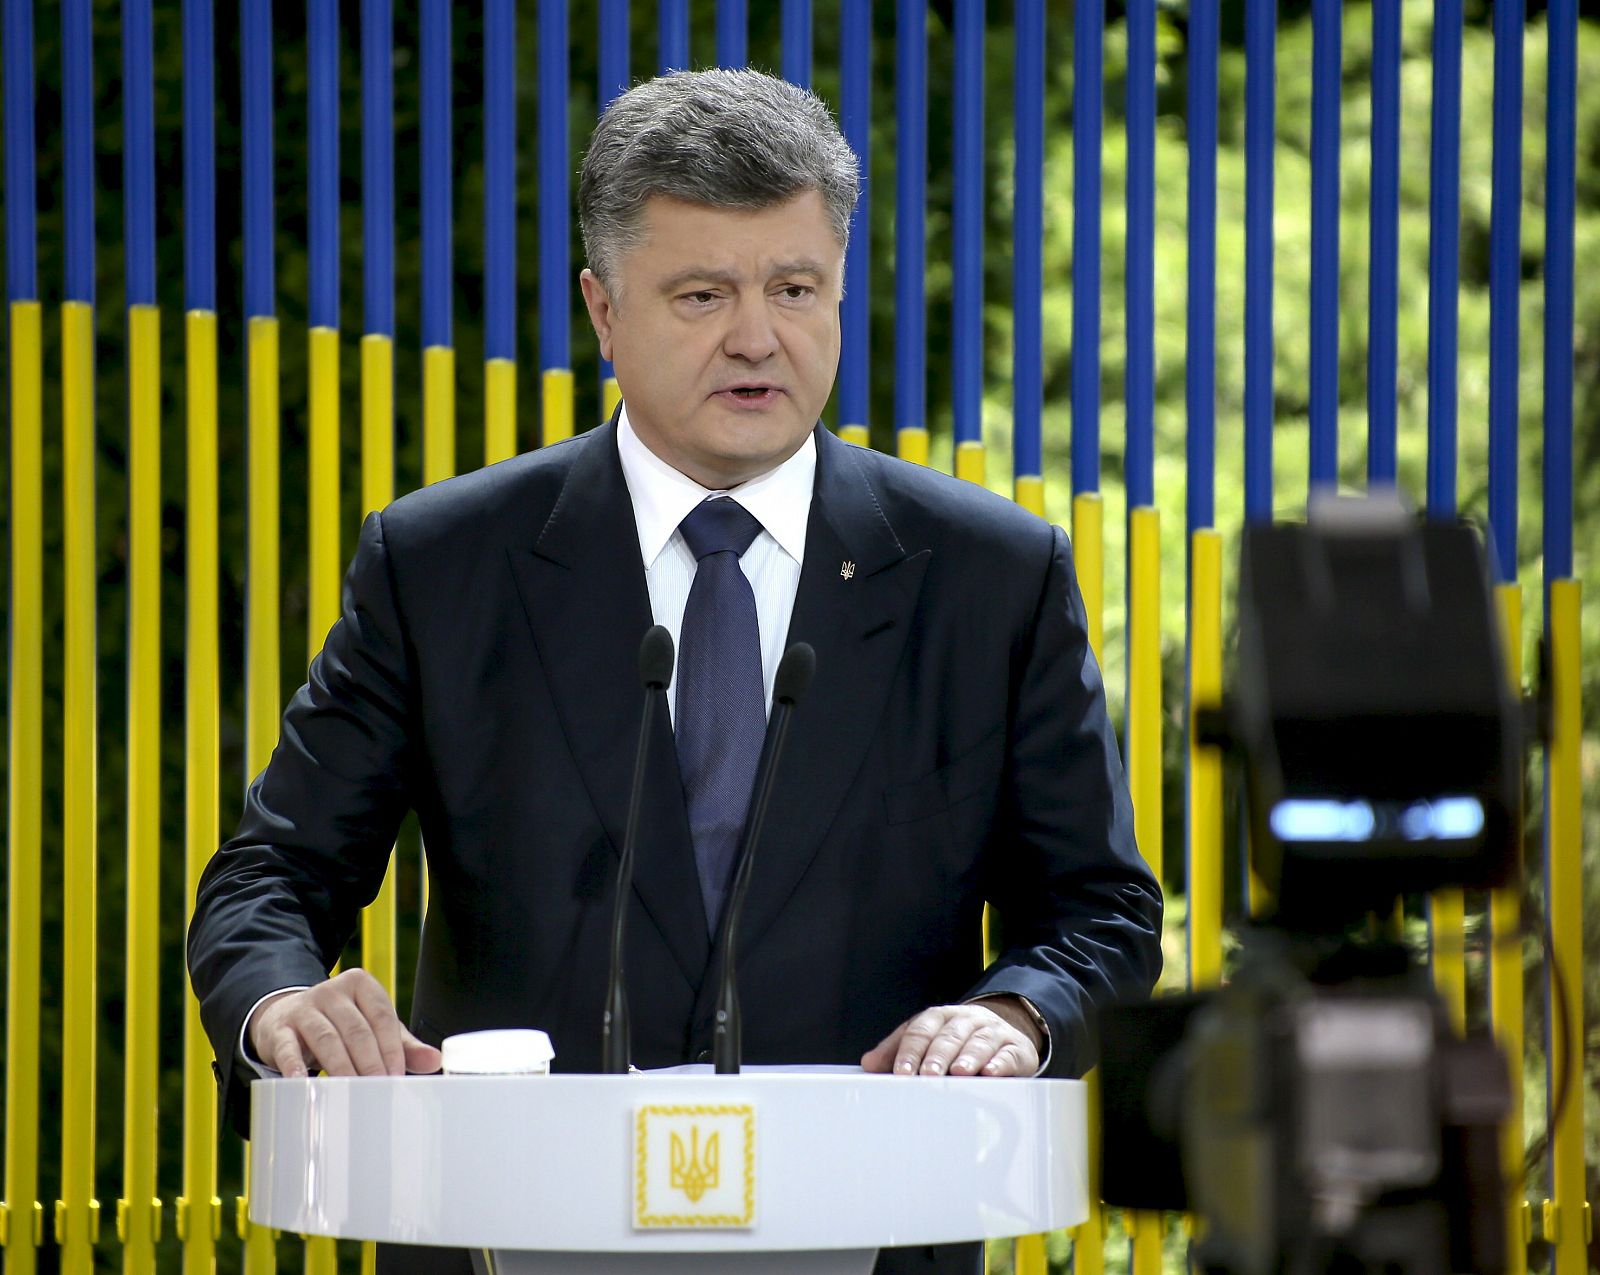 Poroshenko speaks during a news conference in Kiev